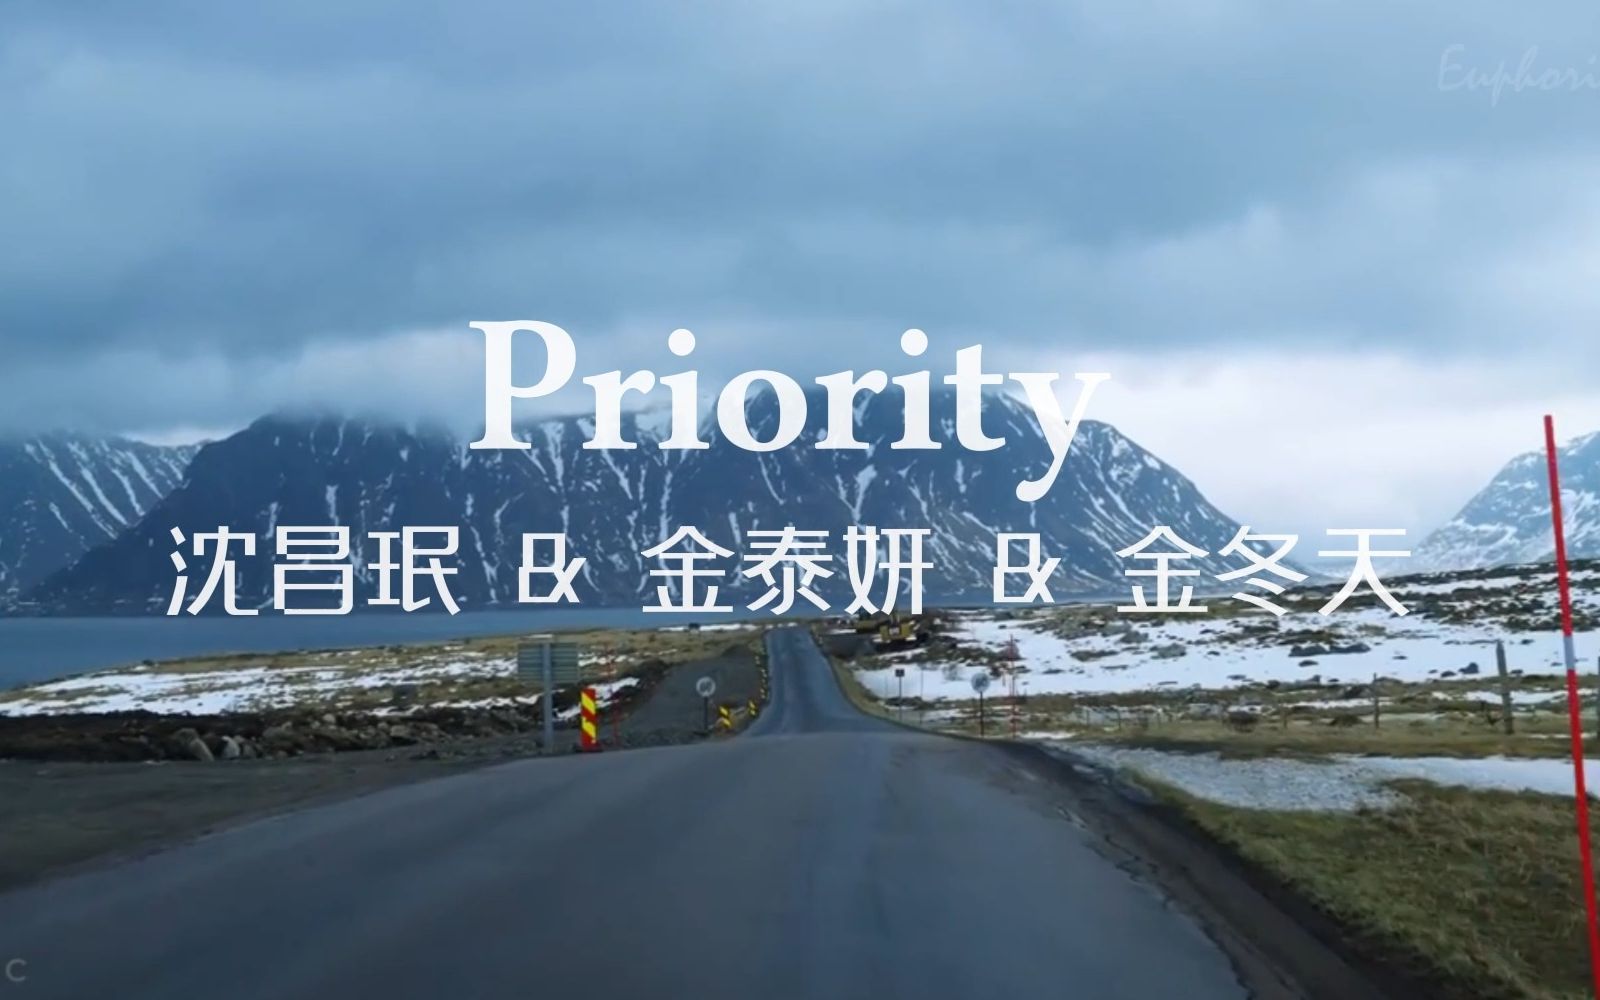 沉浸式听歌|沈昌珉&金泰妍&金玟庭-Priority|享受雪山之下的神仙吟唱|戴耳机|白噪音